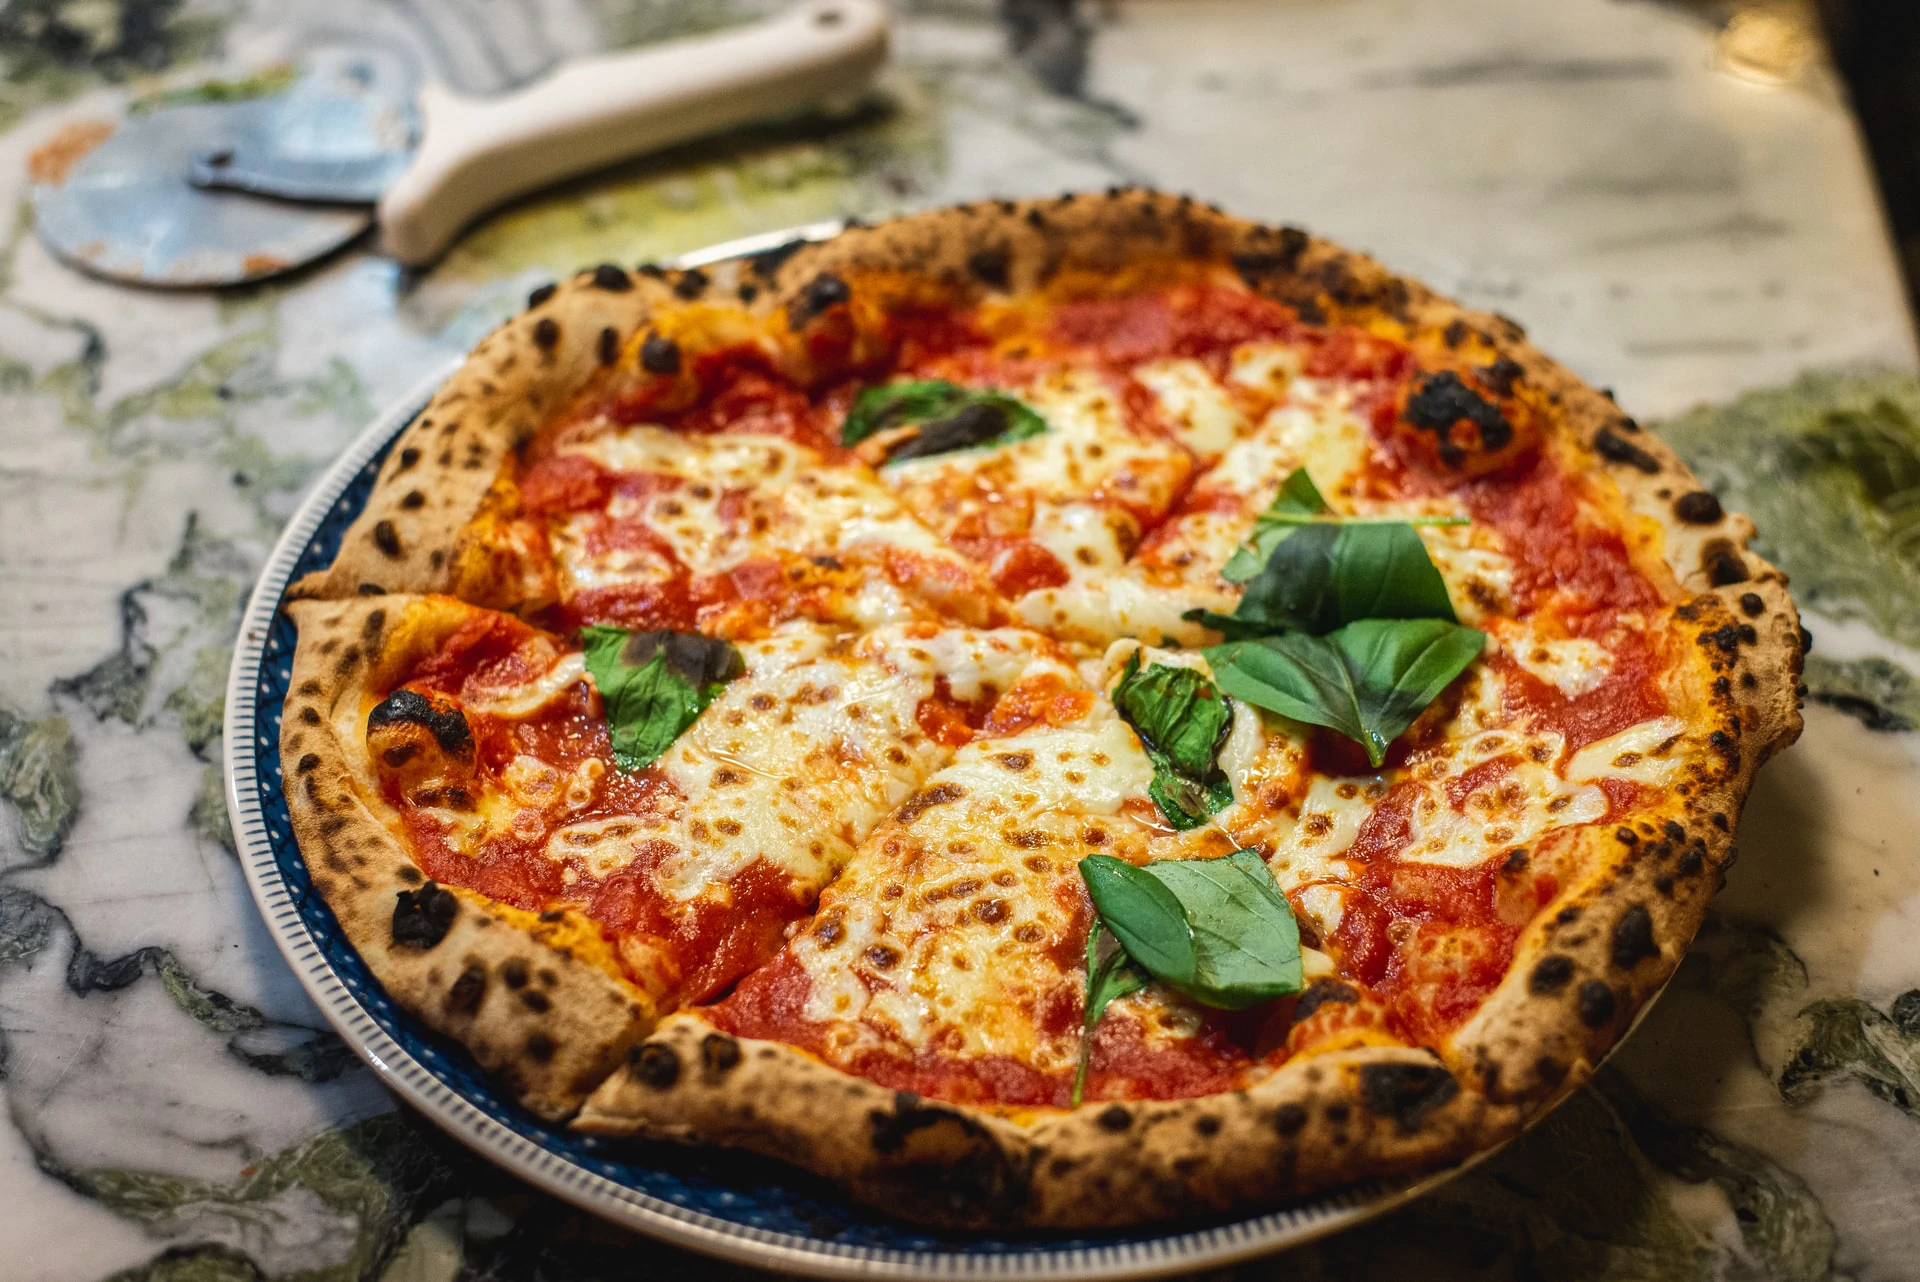 Photo of a pizza napoletana